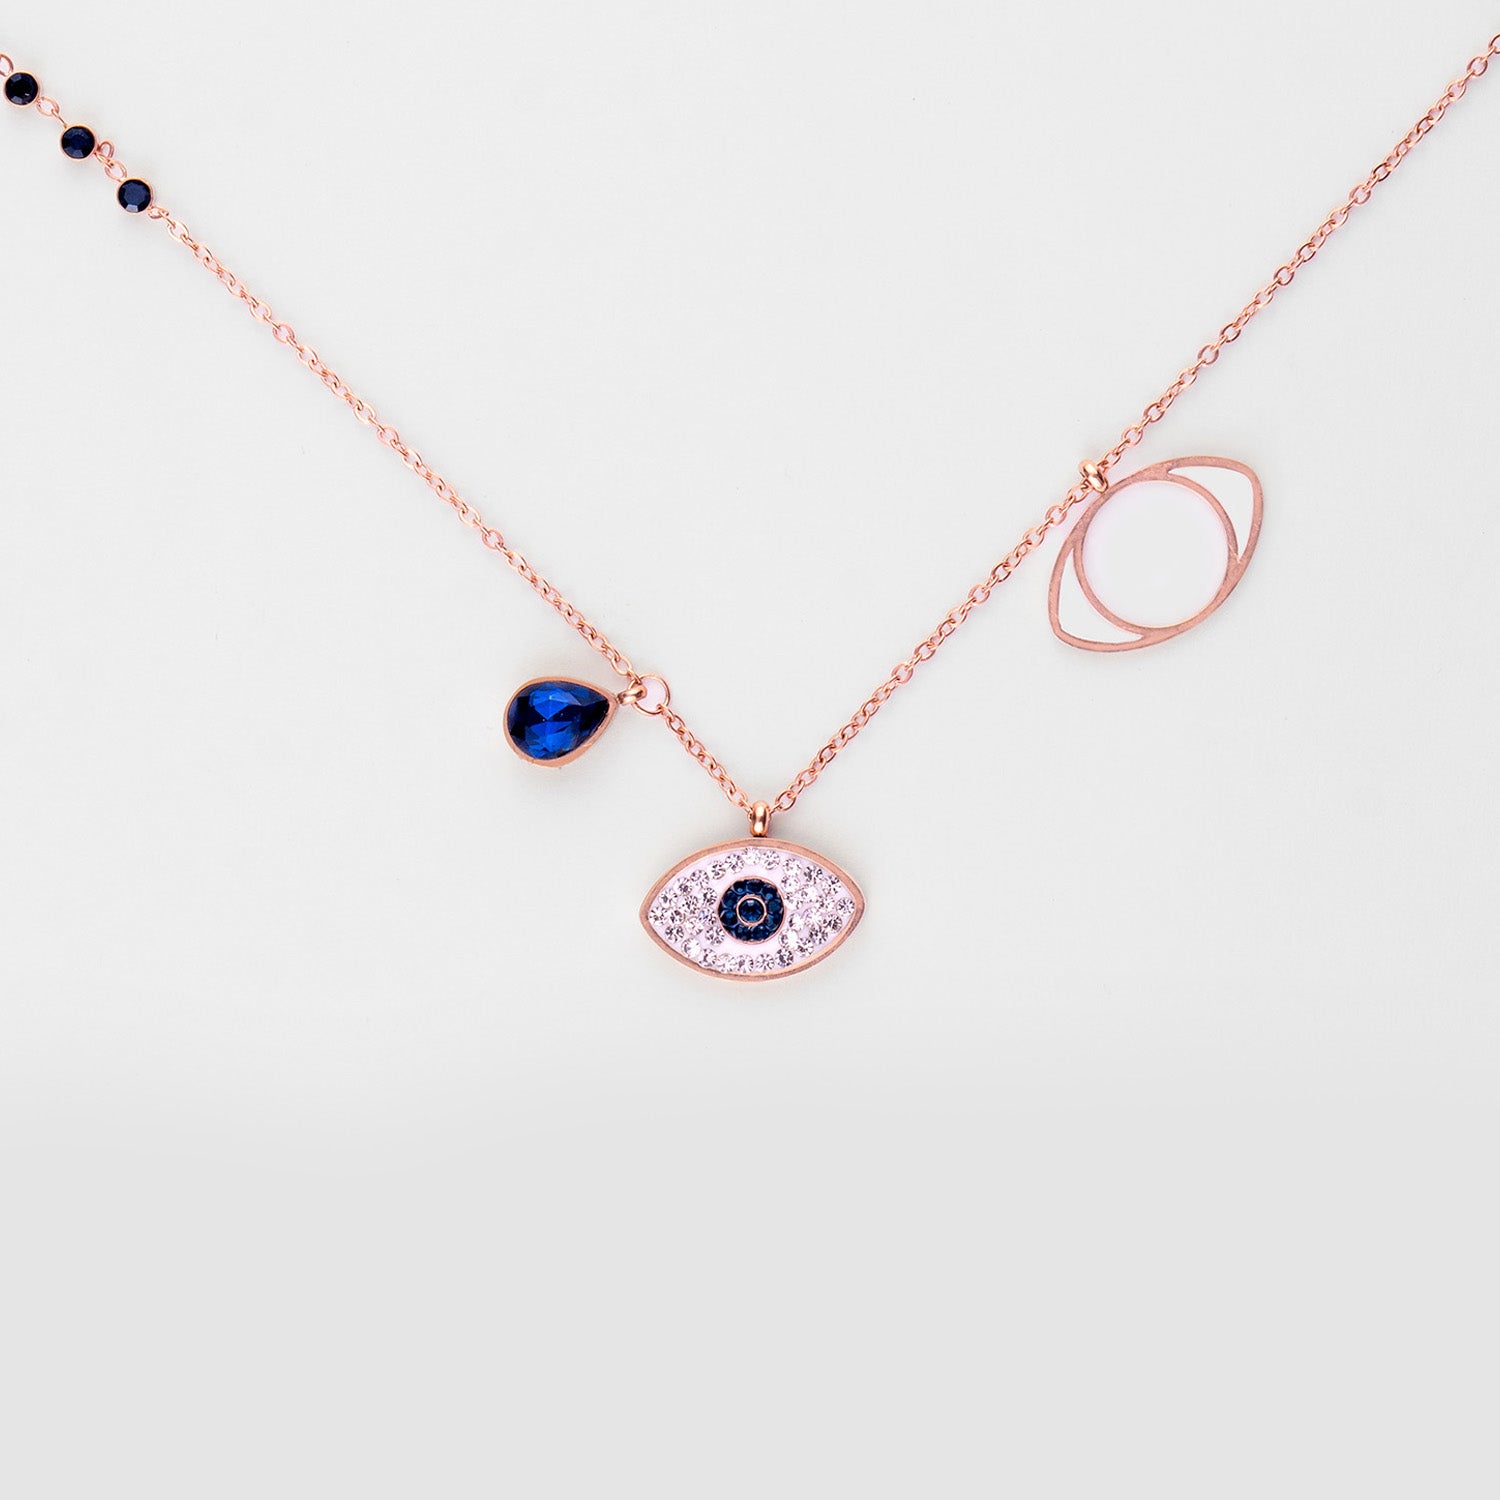 RUIYI evil eye necklace keychain, blue eye charm 30mm, India | Ubuy